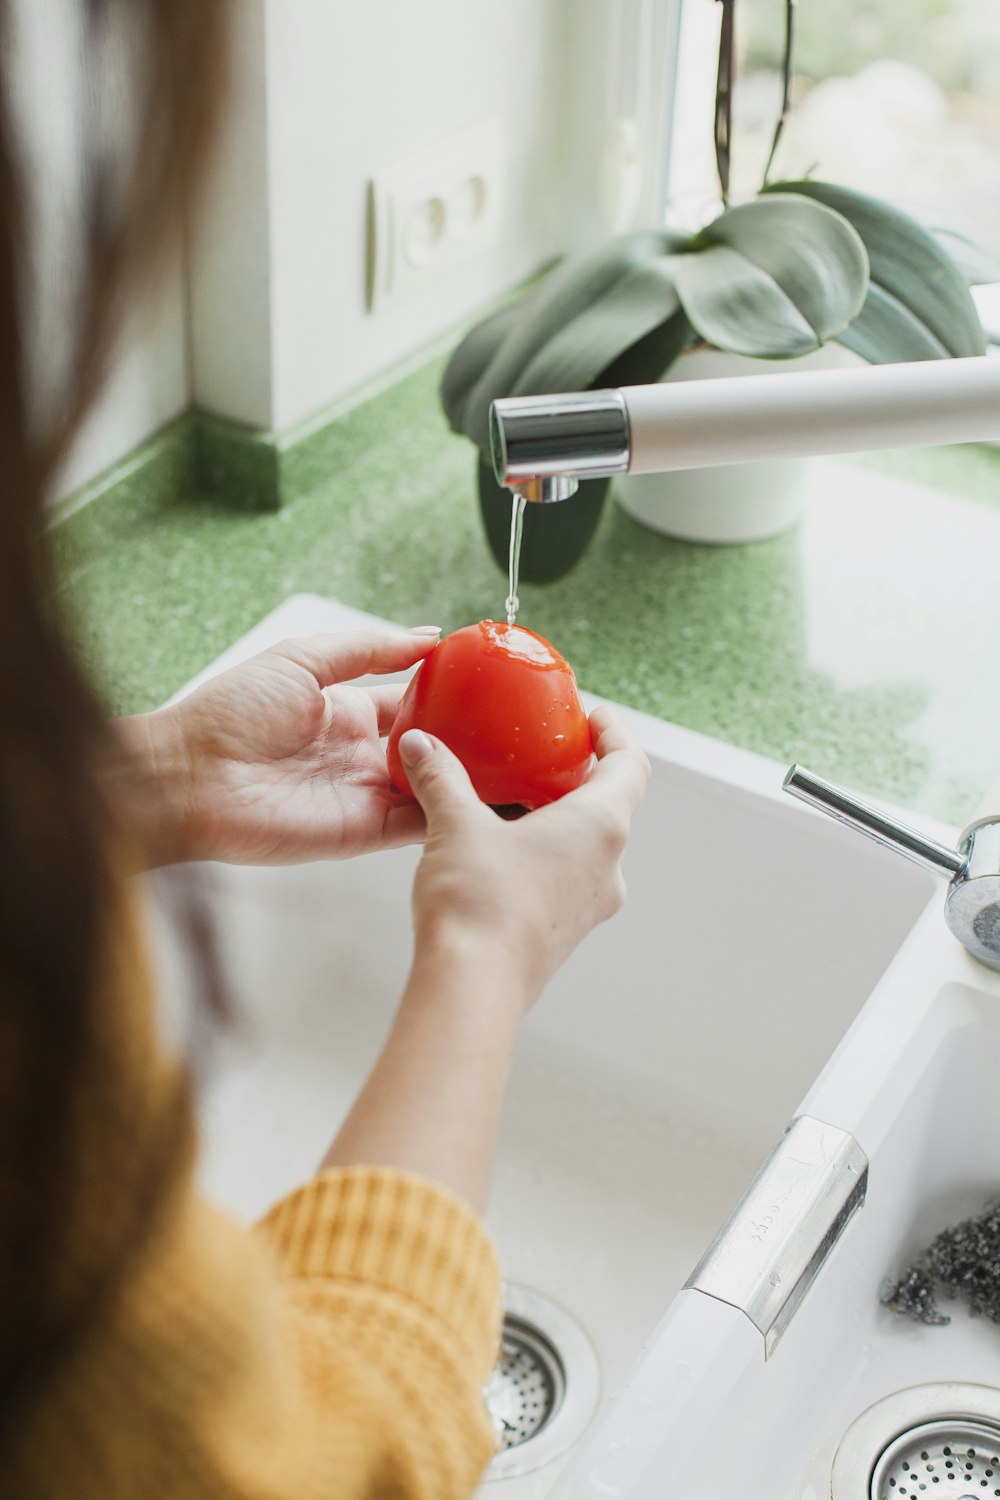 personne tenant une tomate rouge en train d’être lavée dans le robinet